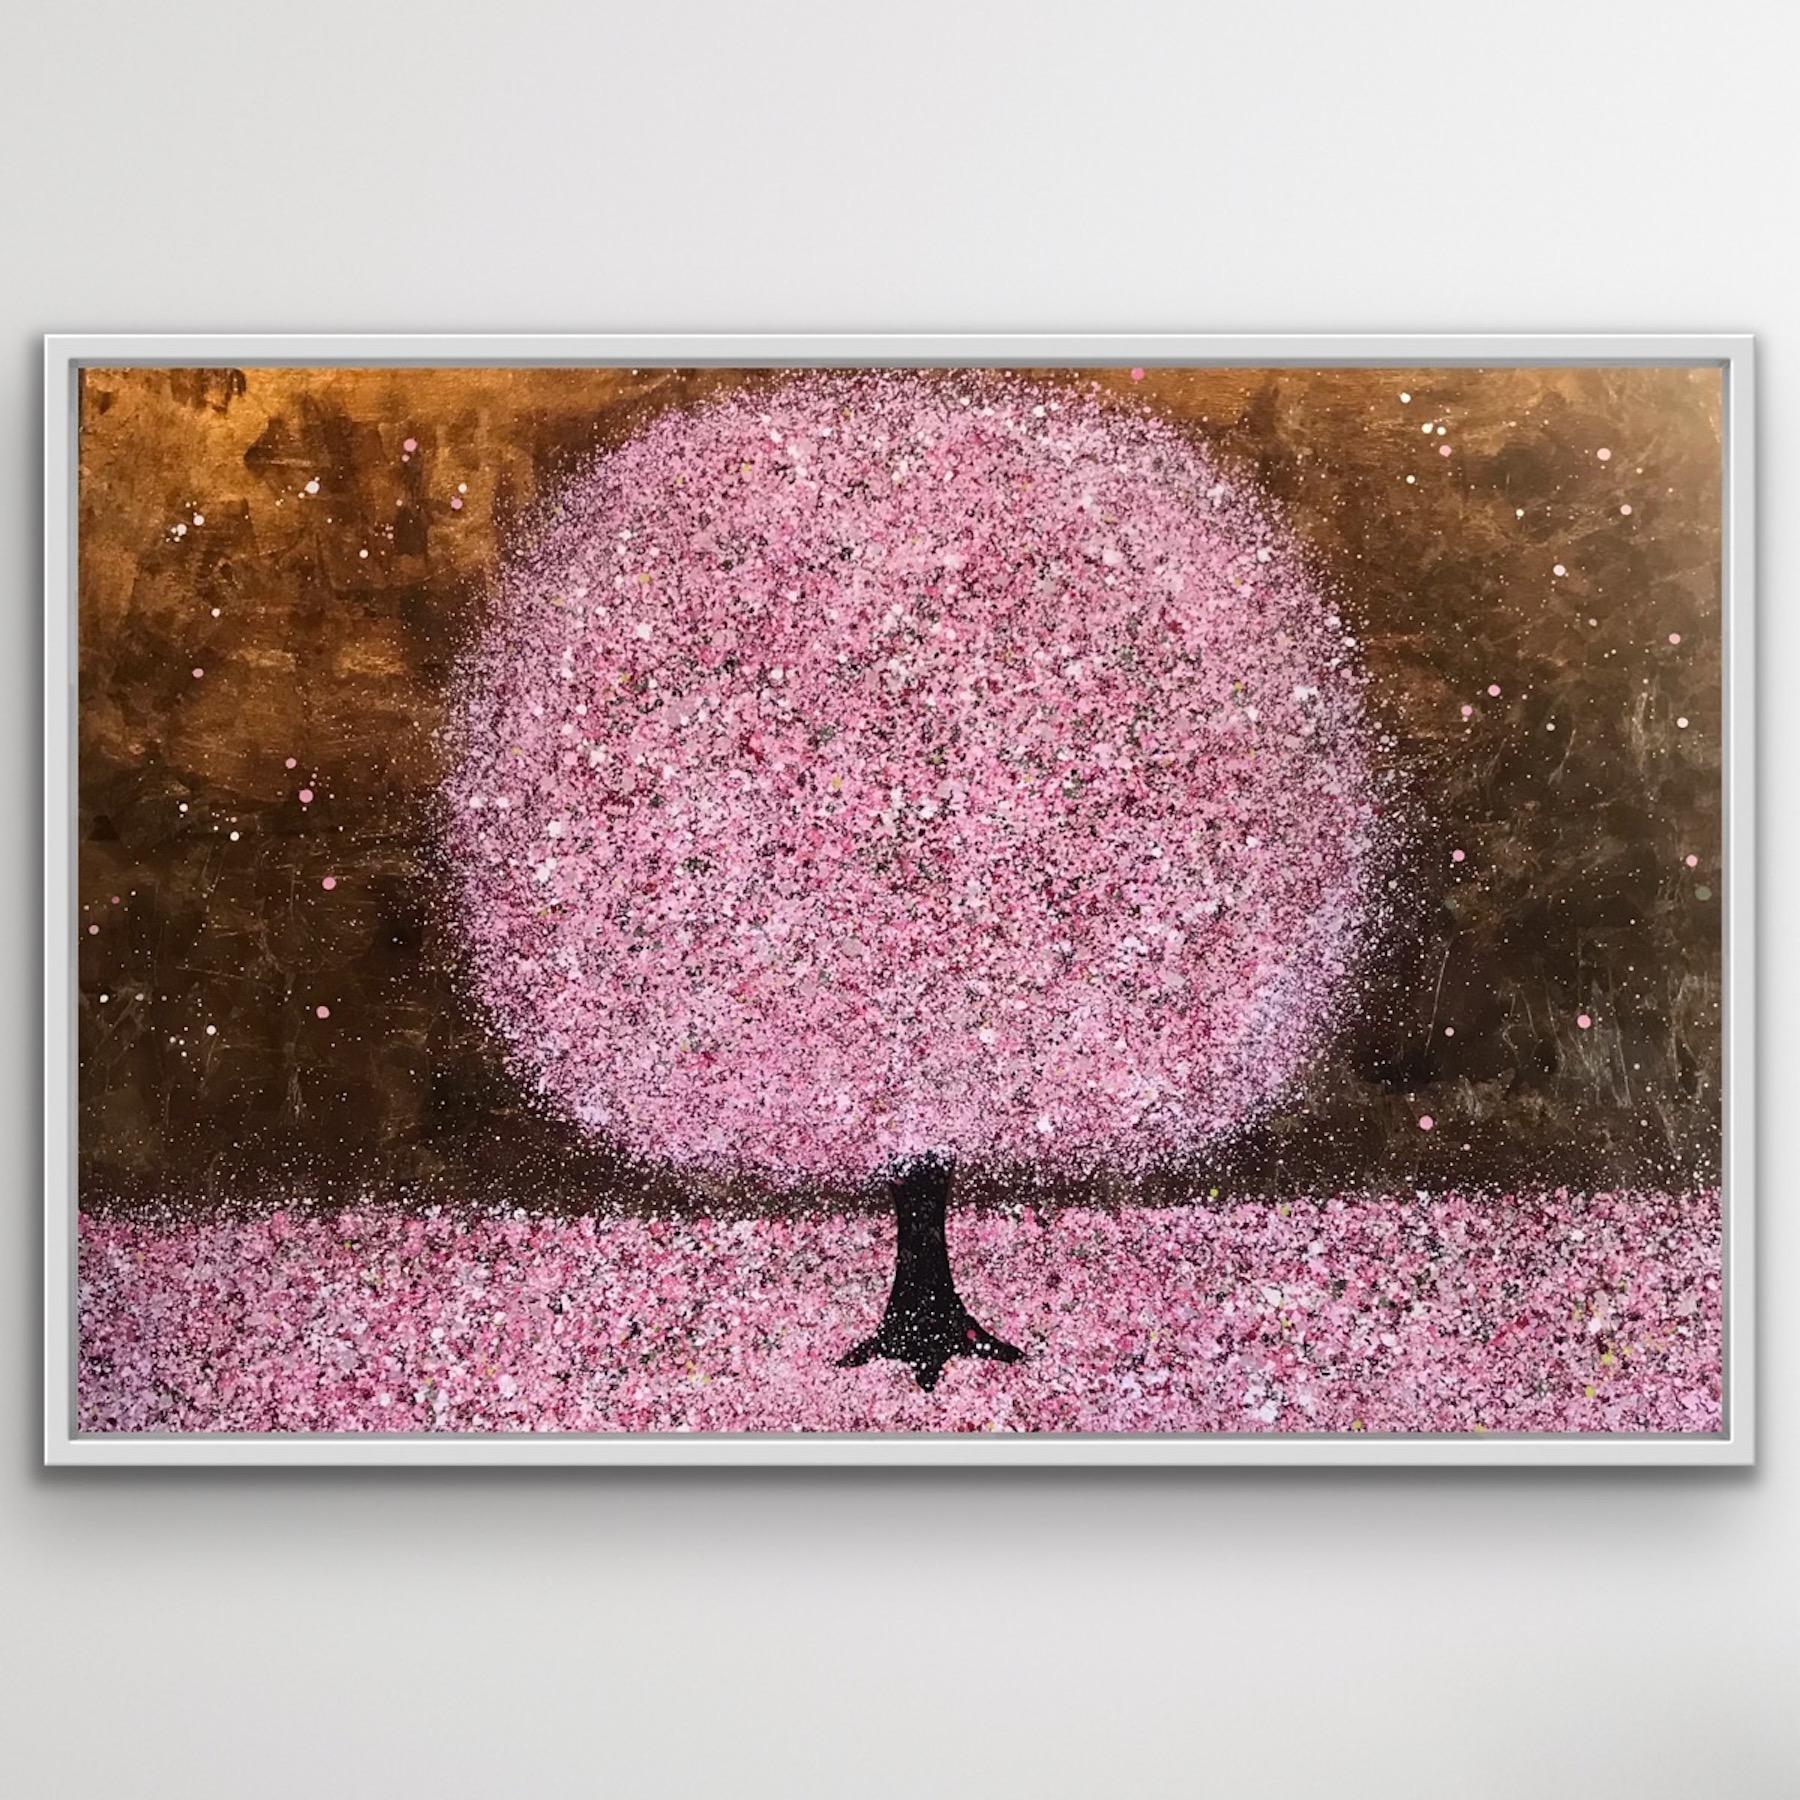 Blossoming in Spring, Goldbaumkunst, Rosa Kirschblütenblüten-Landschaftsgemälde (Abstrakt), Painting, von Nicky Chubb